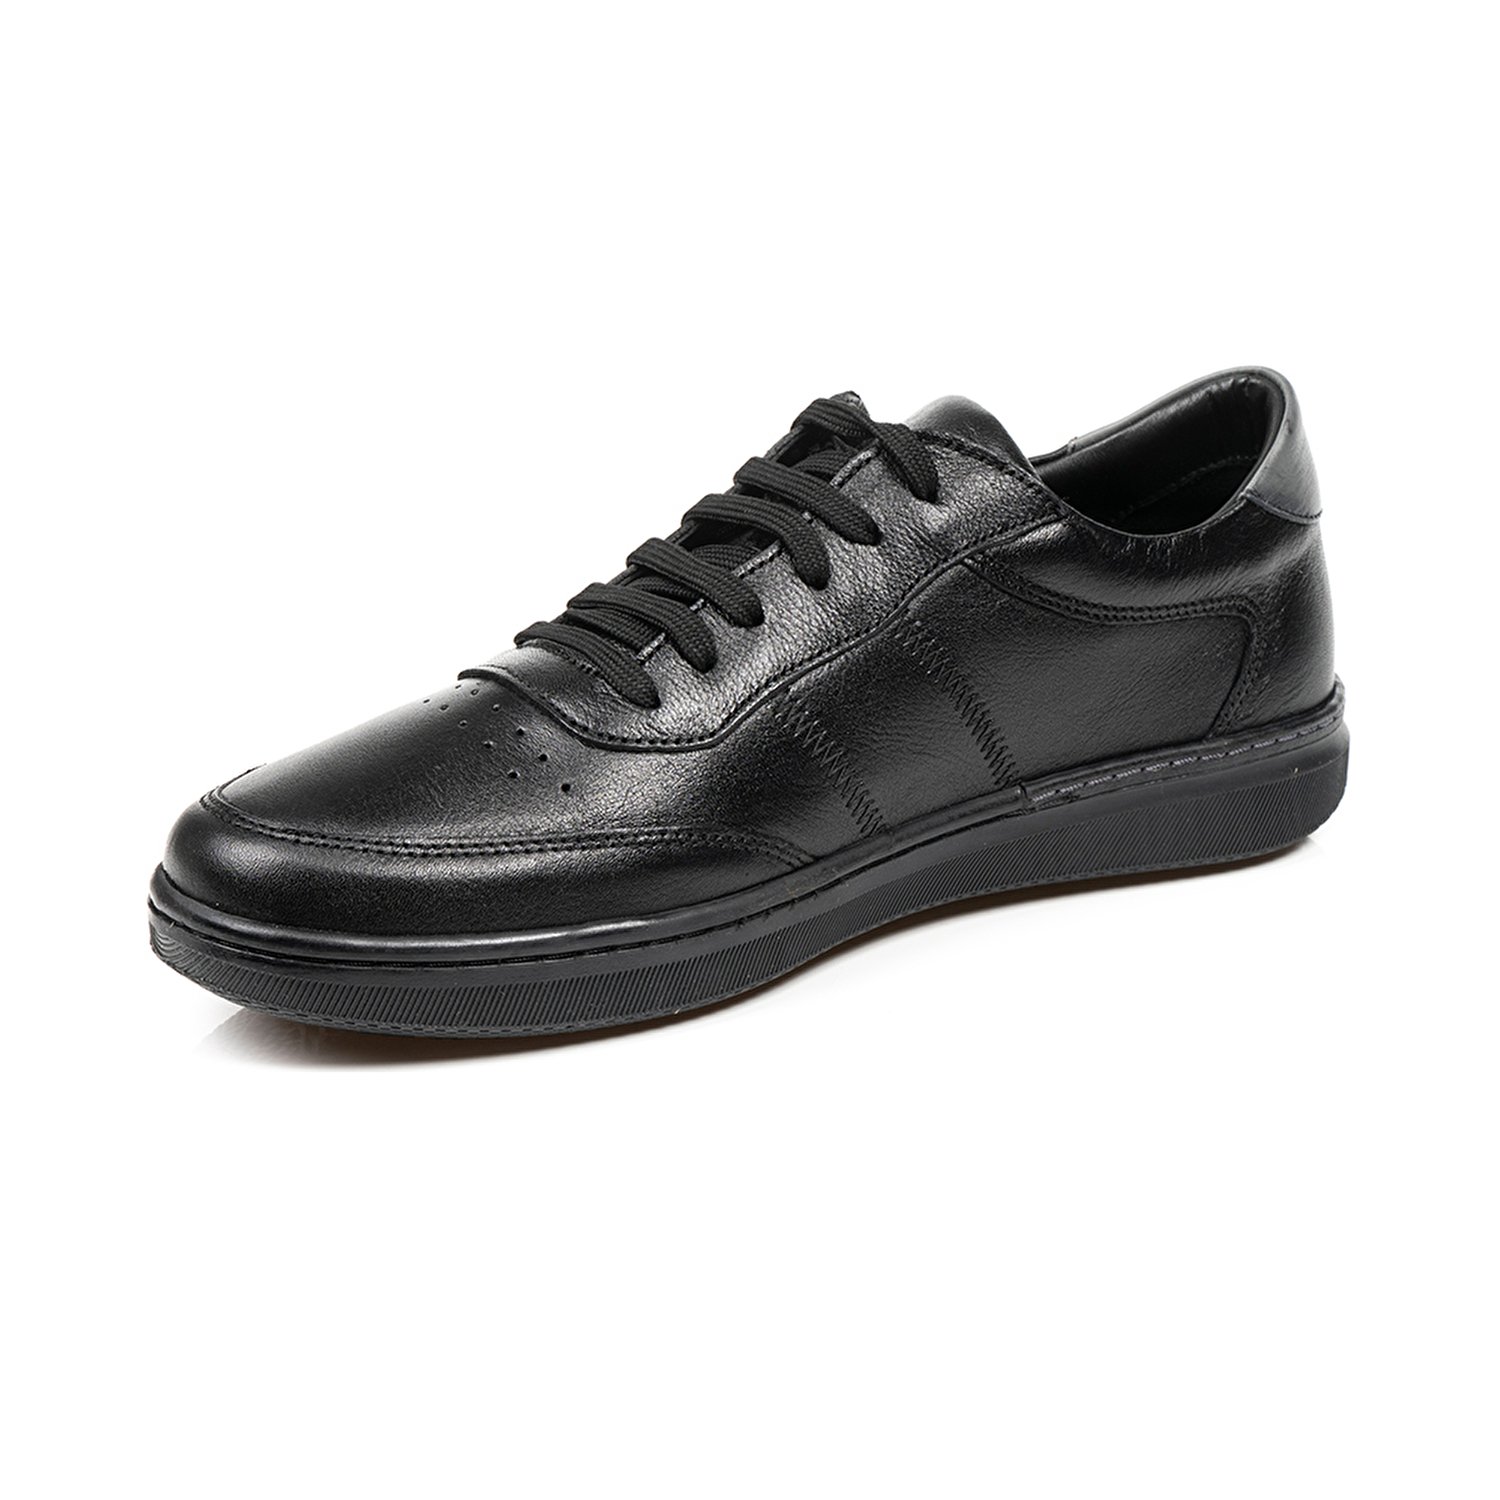 Klasik Erkek Ayakkabı Siyah 67905-3